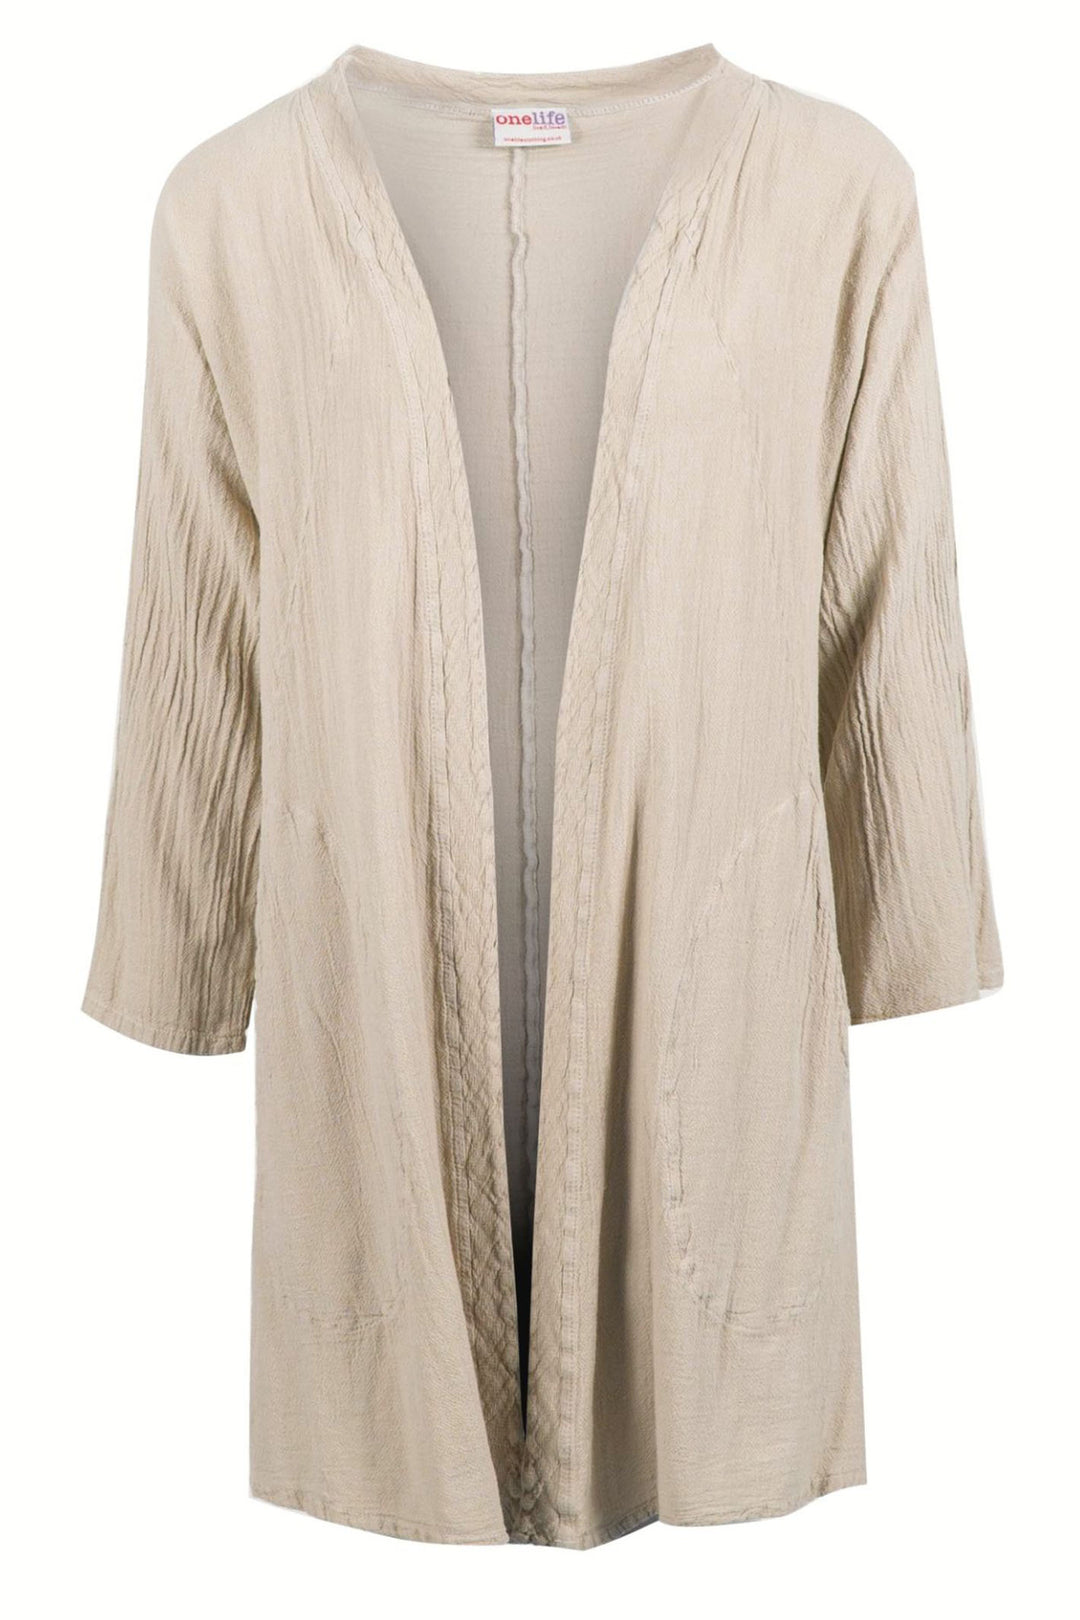 Onelife J628 Parrot Taupe Cotton Loose Fit Kimono - Experienbce Boutique